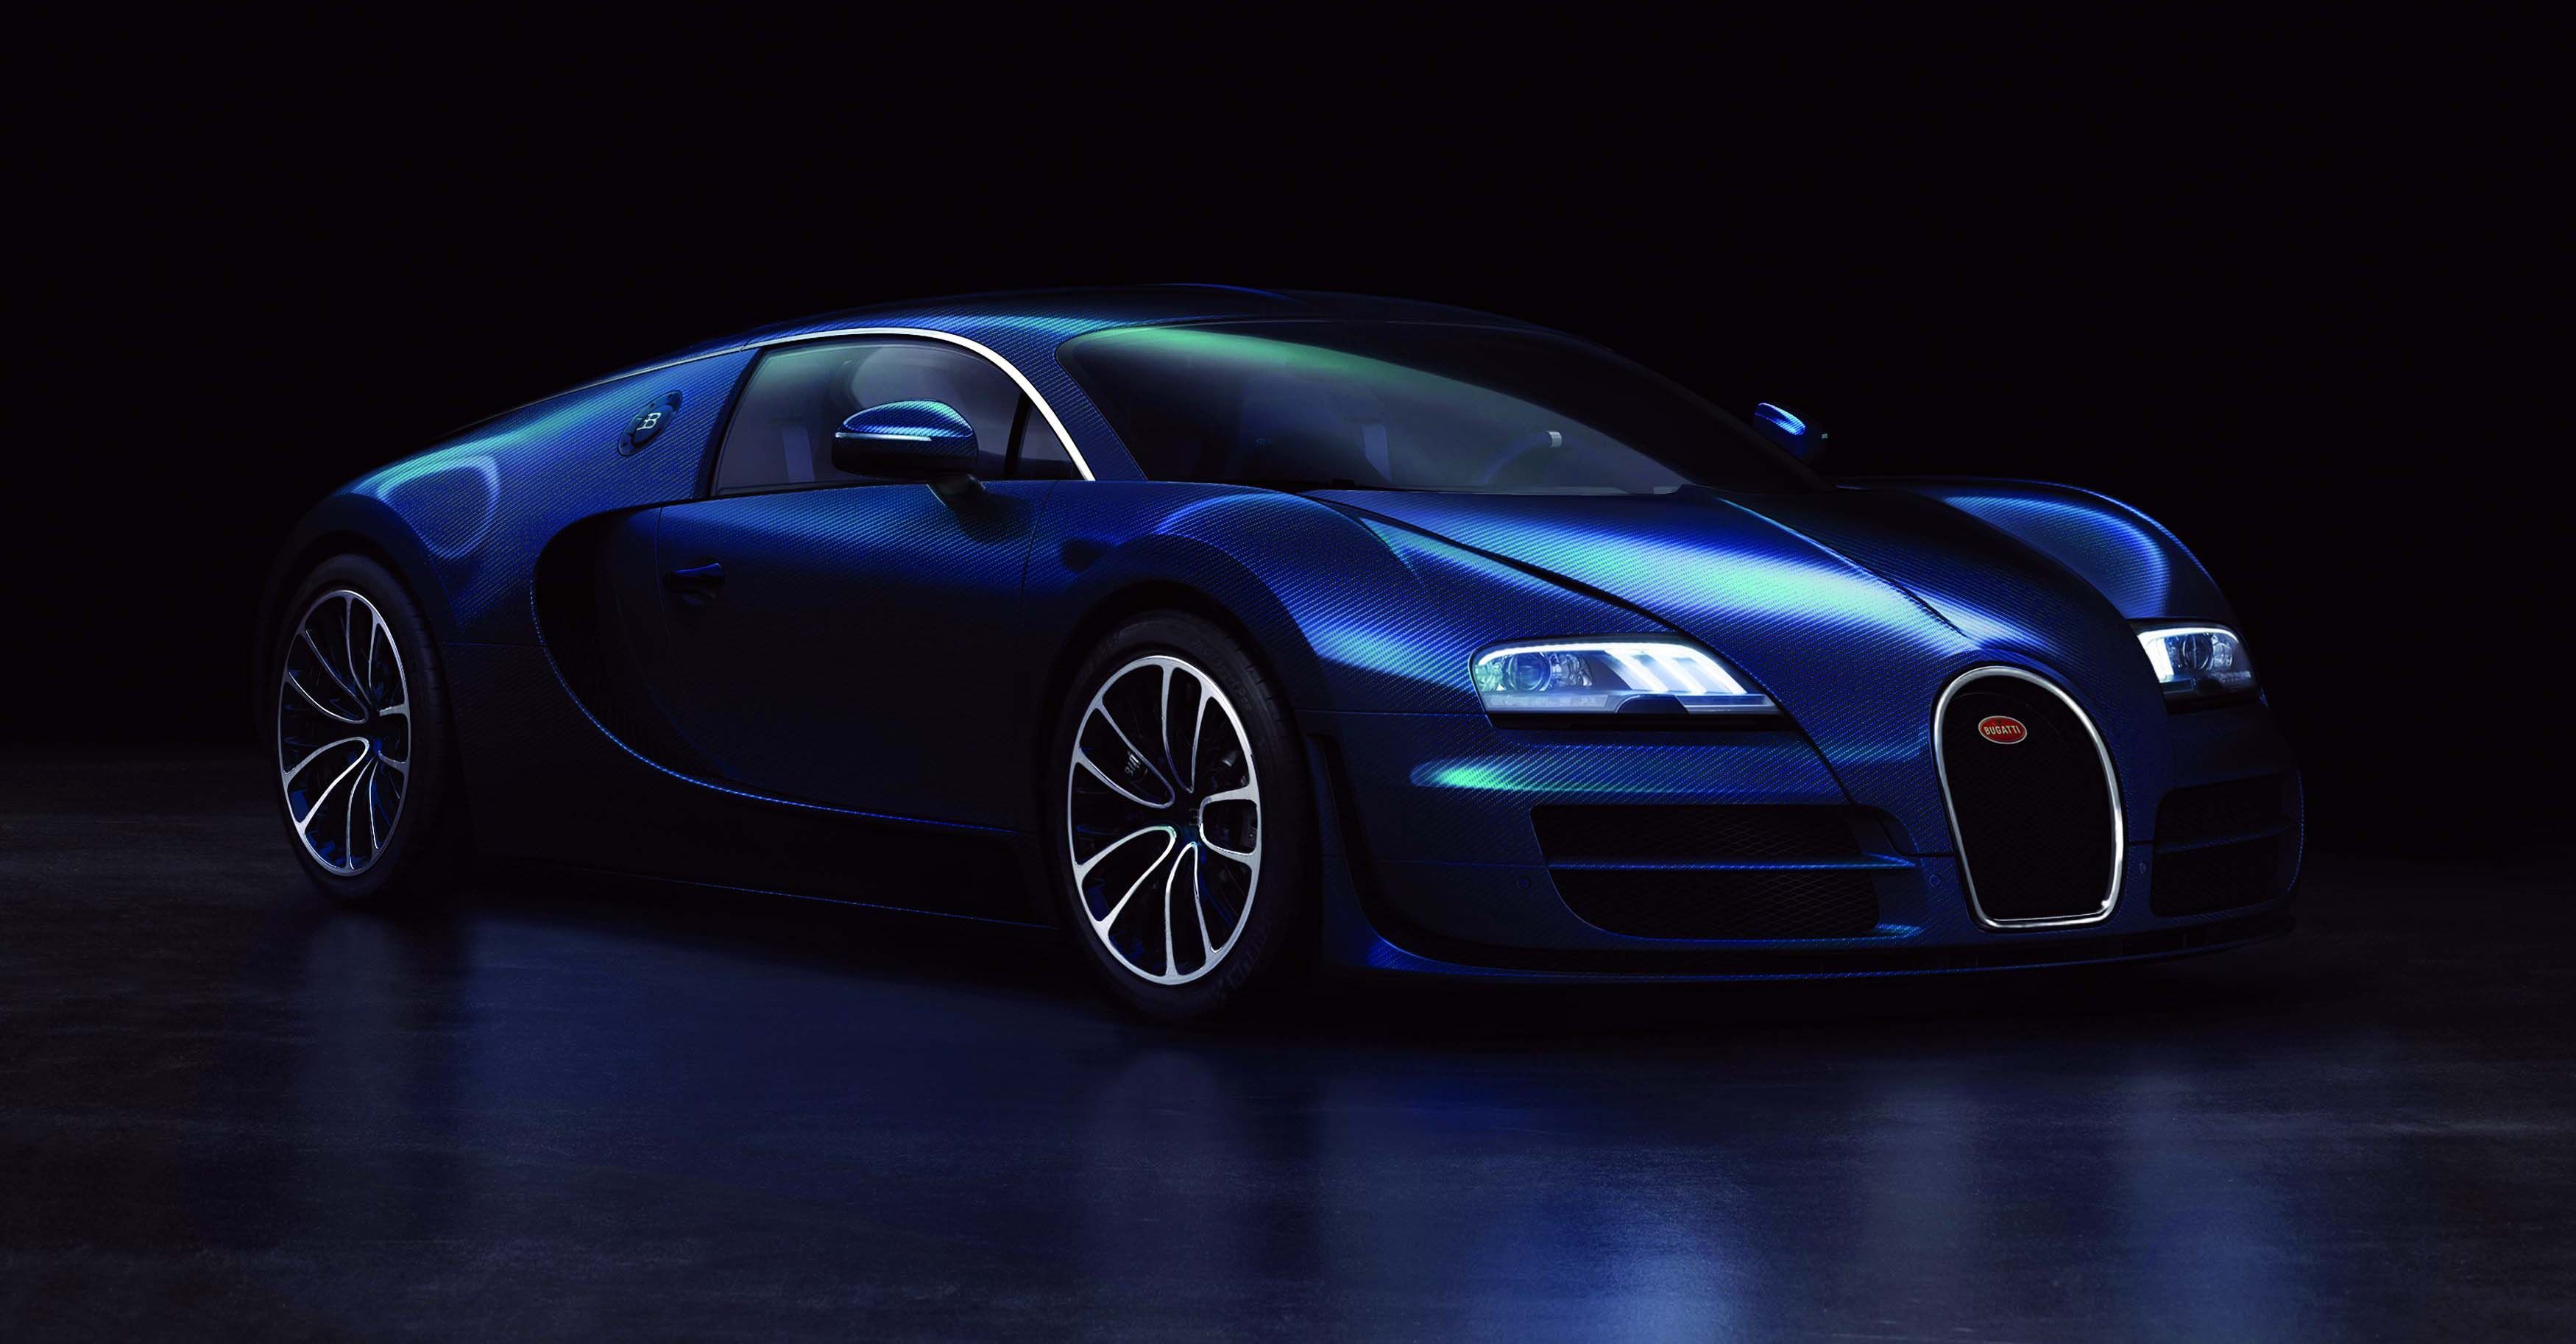 Blue Bugatti Veyron 2016 Desktop Wallpaper HD More. Bugatti veyron, Bugatti veyron super sport, Super sport cars